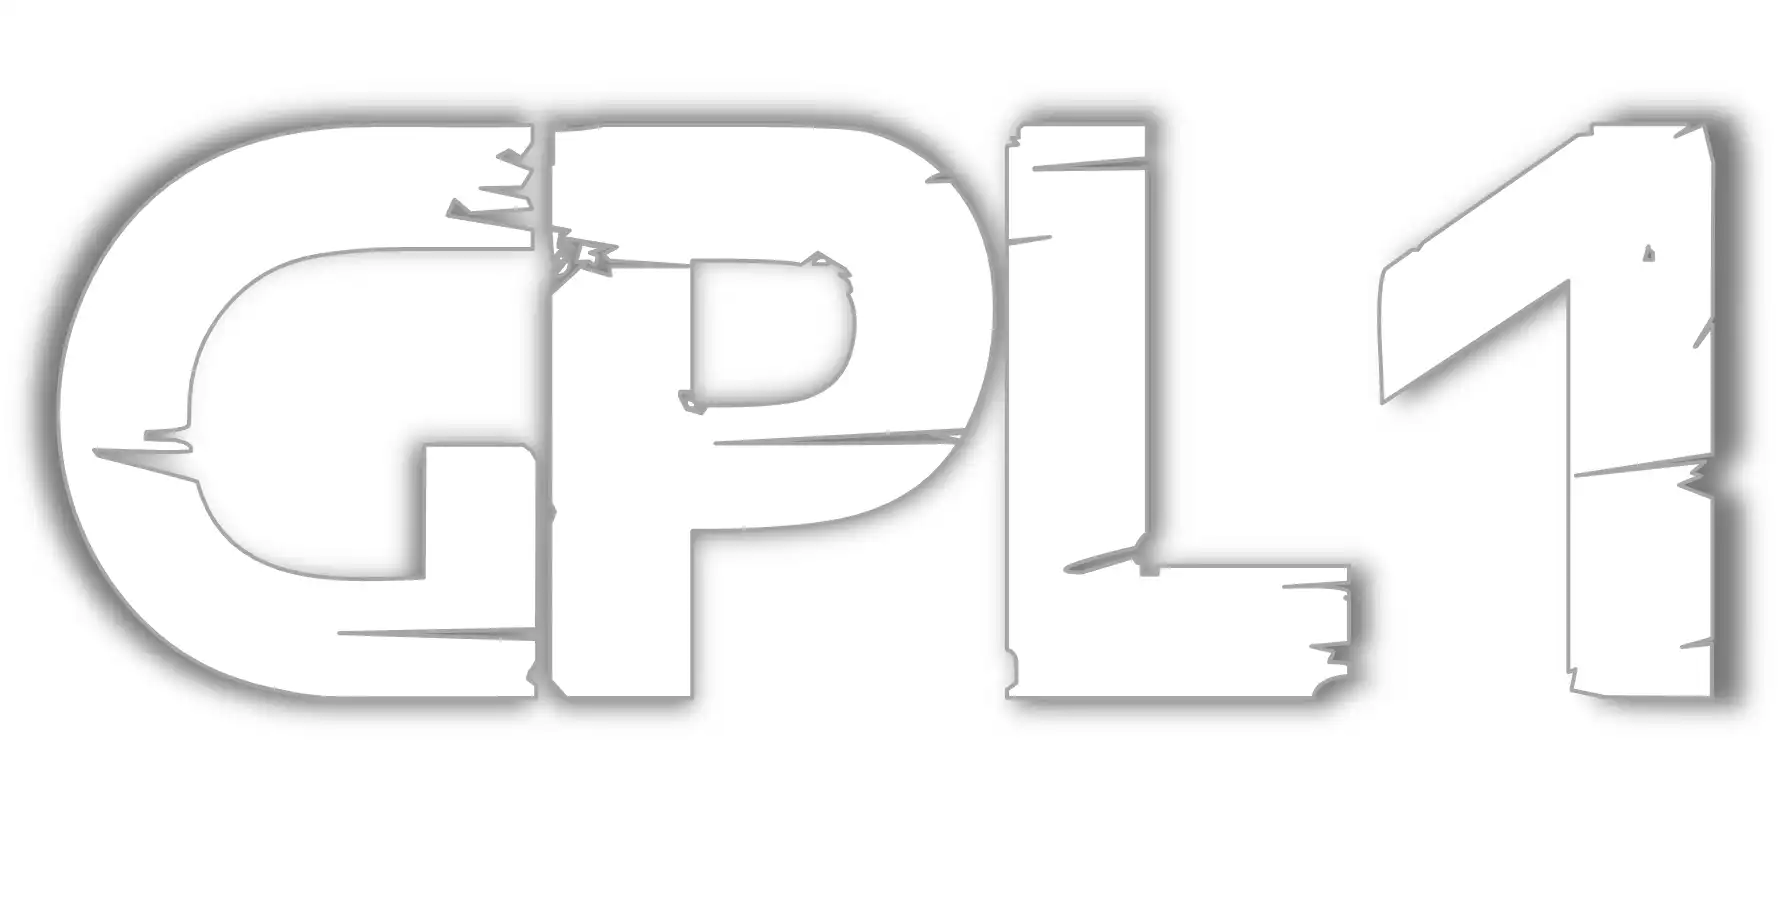 웹 도구 또는 웹 앱 GPL 다운로드